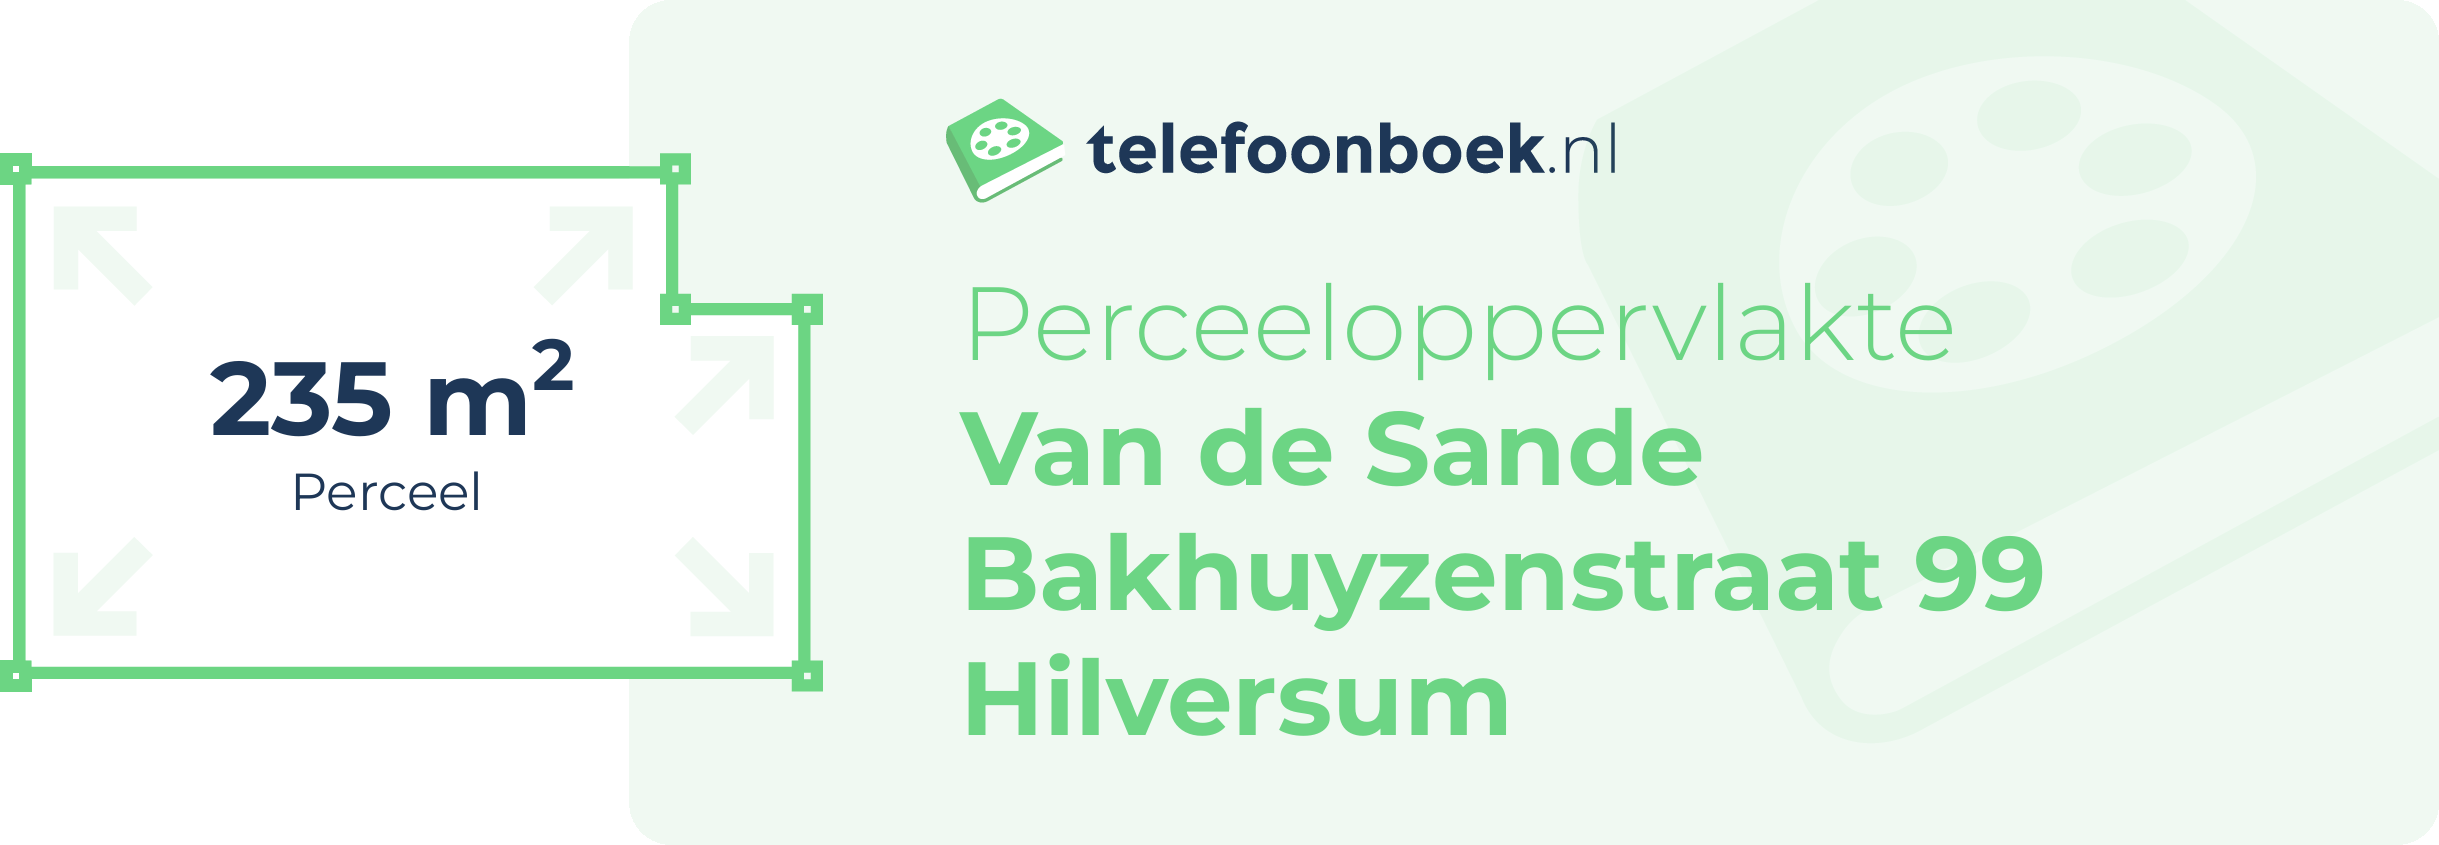 Perceeloppervlakte Van De Sande Bakhuyzenstraat 99 Hilversum